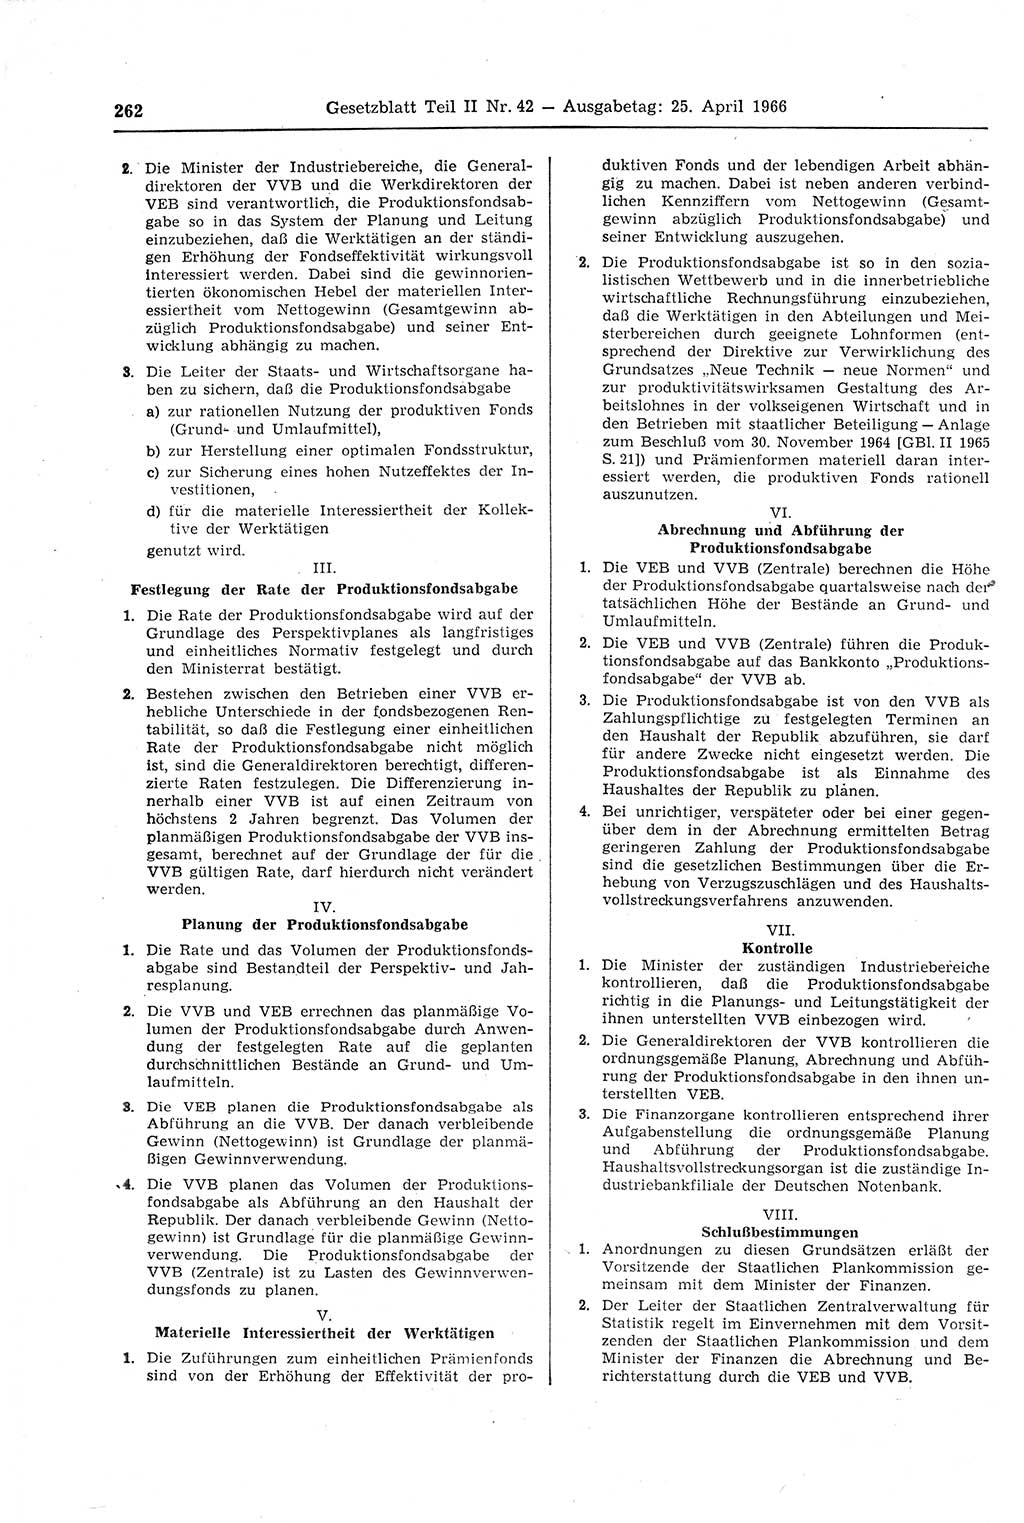 Gesetzblatt (GBl.) der Deutschen Demokratischen Republik (DDR) Teil ⅠⅠ 1966, Seite 262 (GBl. DDR ⅠⅠ 1966, S. 262)